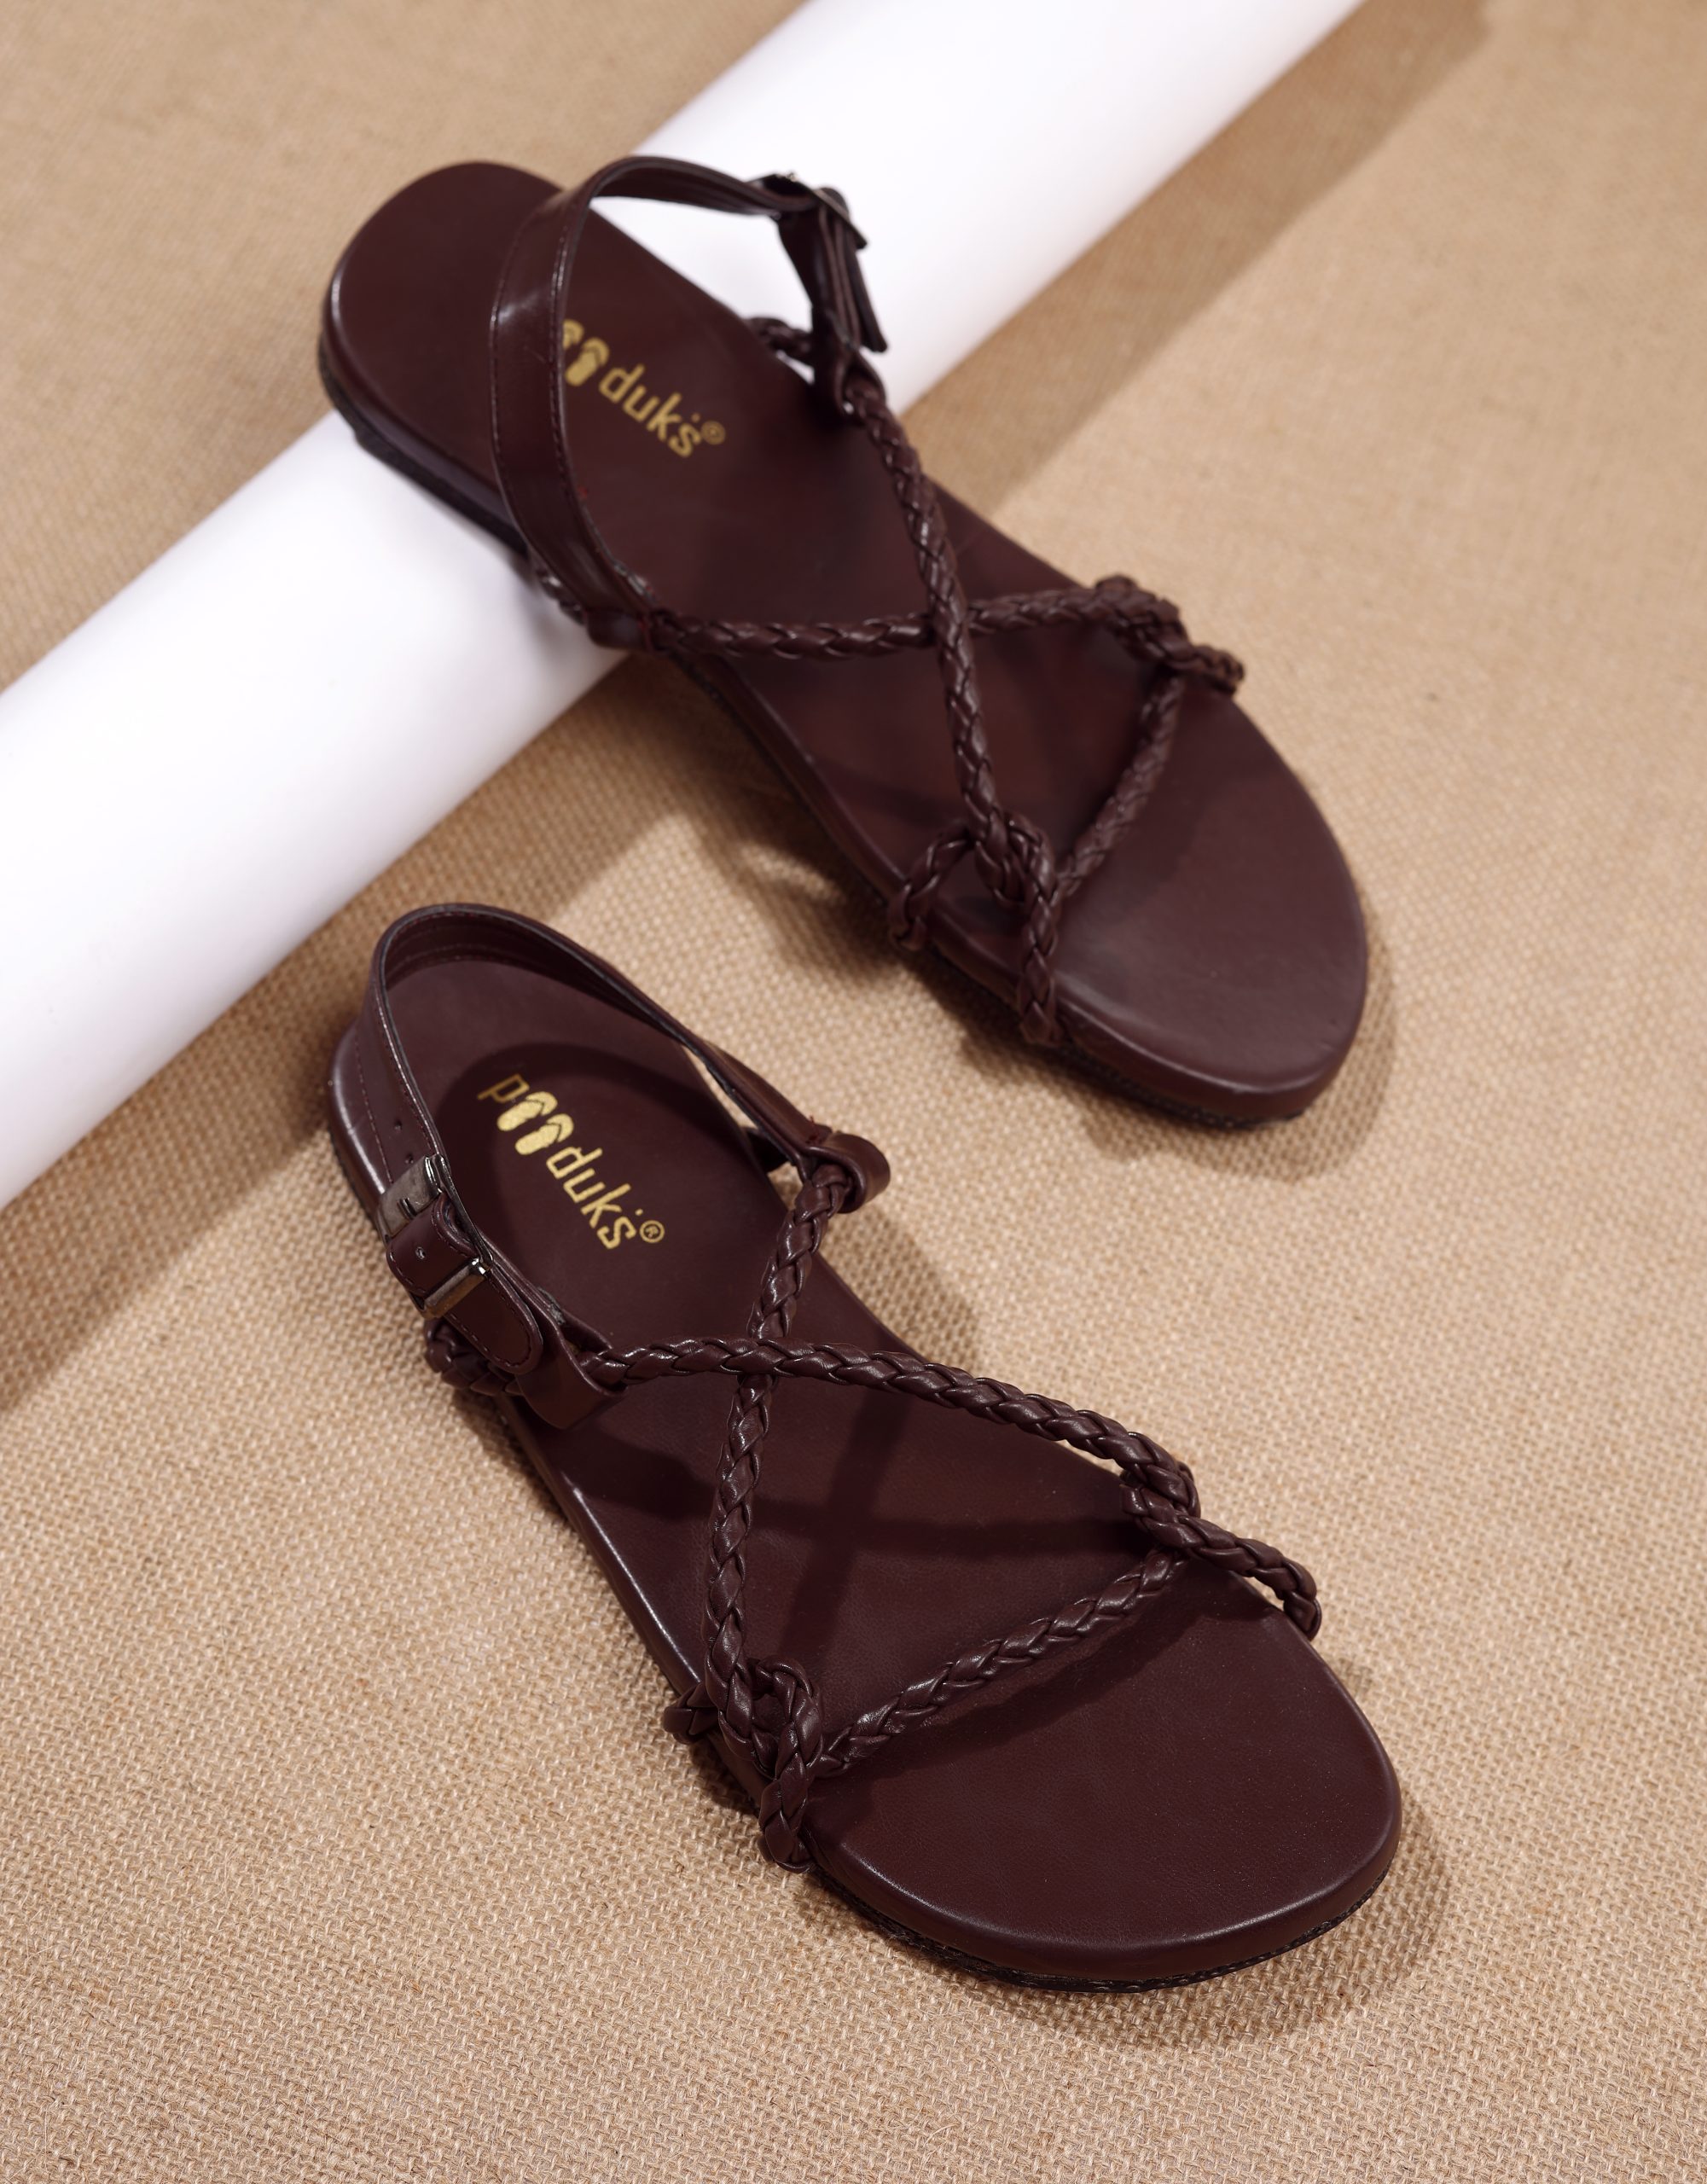 Product: Paaduks Women Corda – Dark Brown Sandals